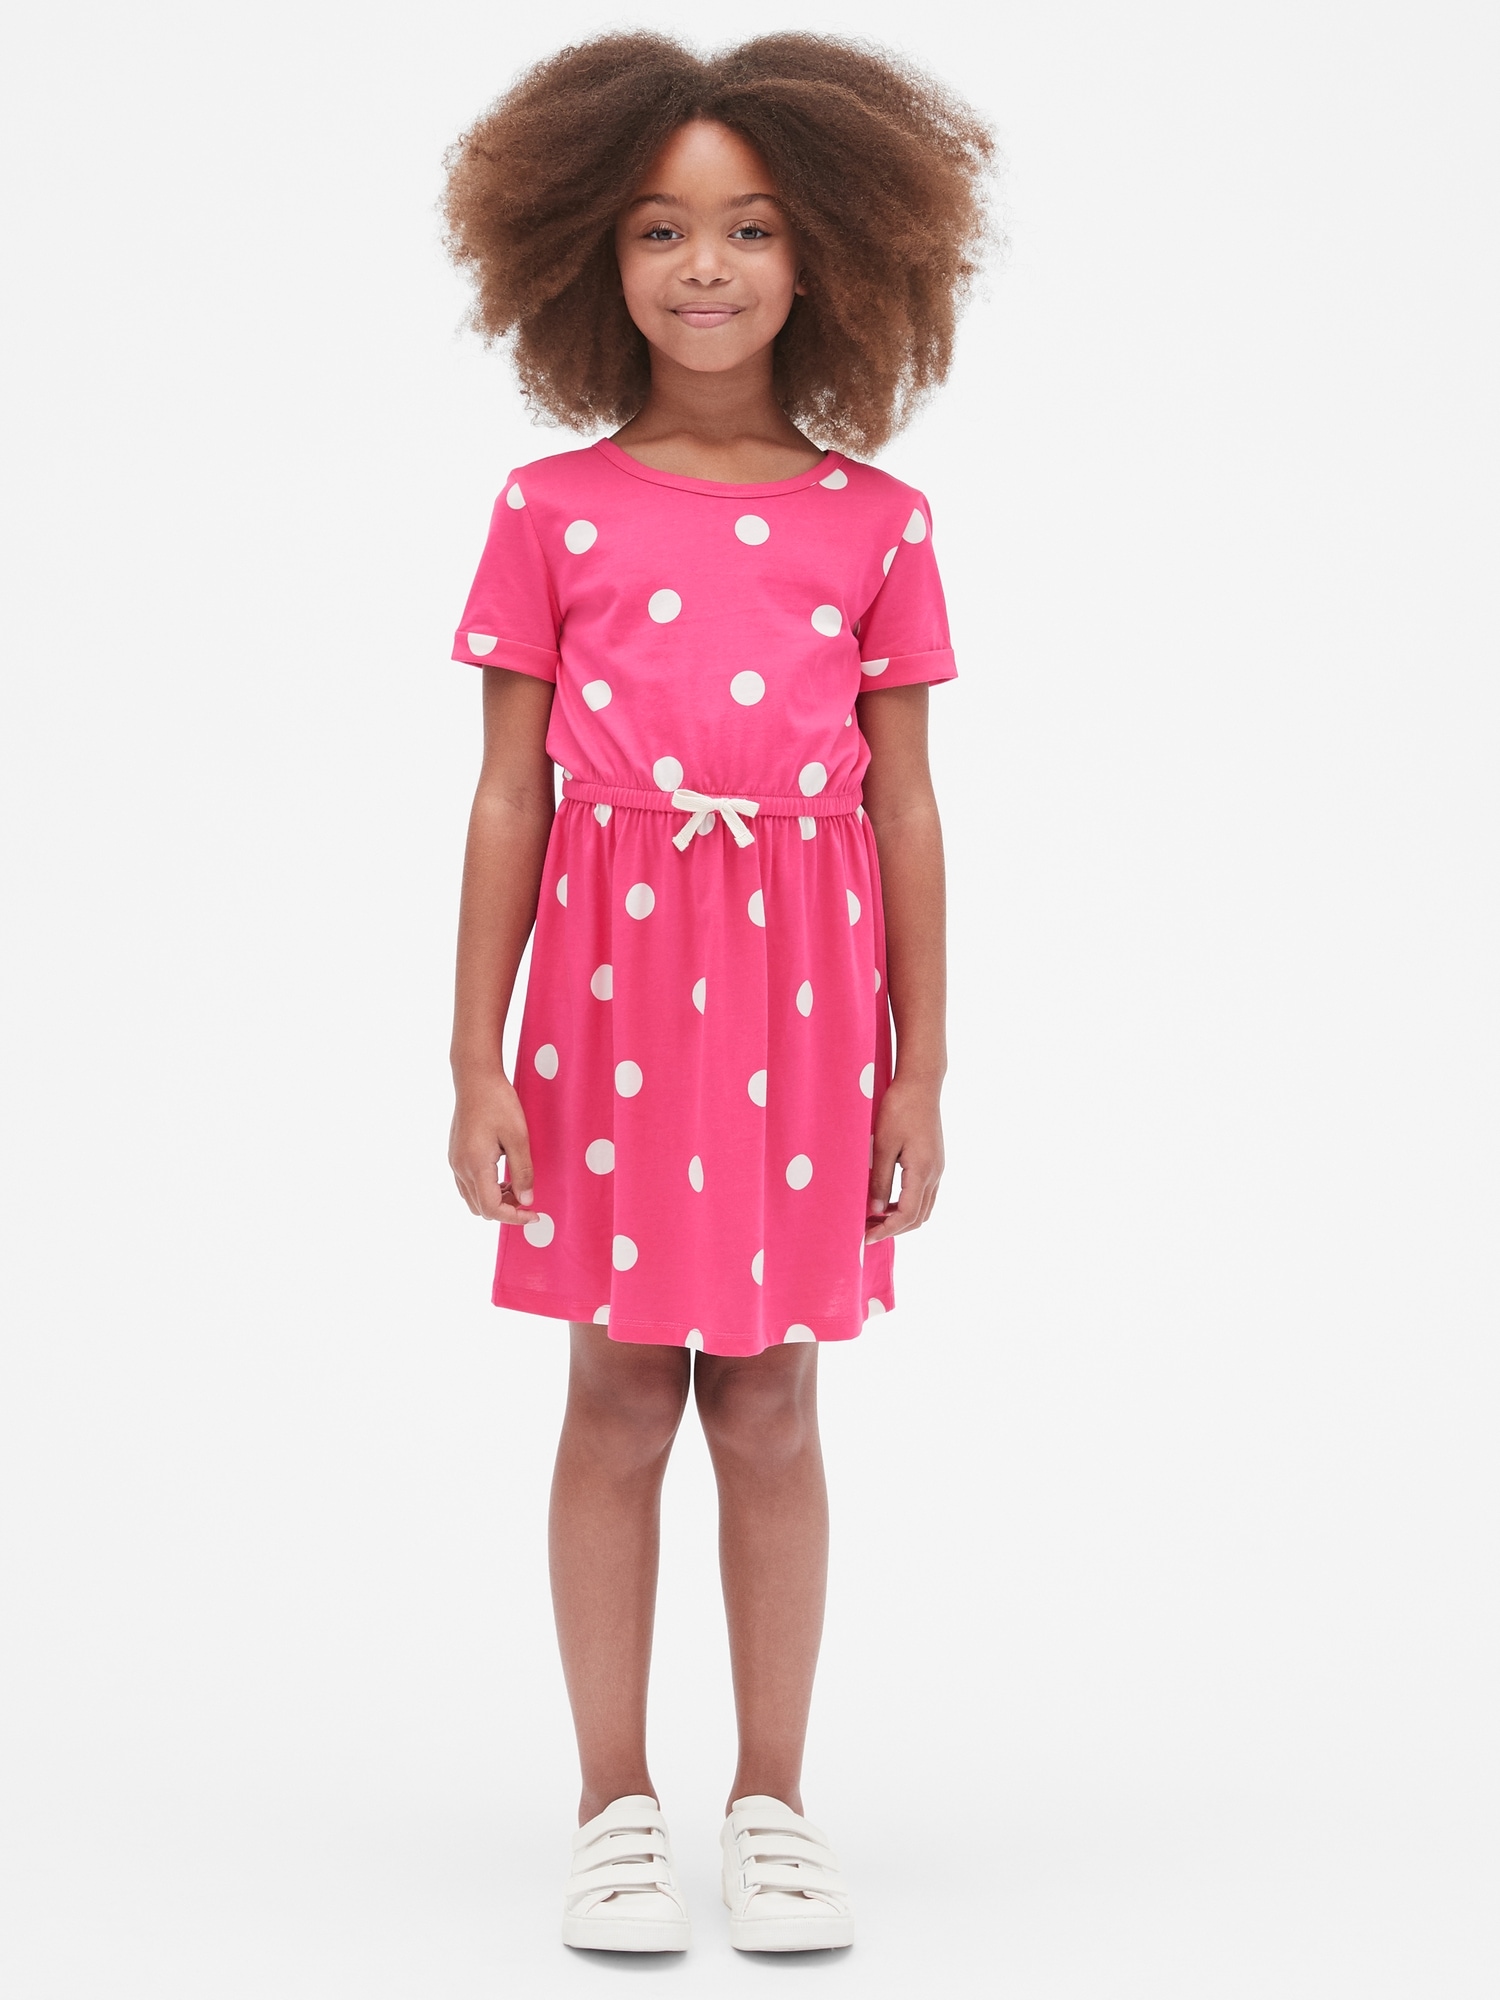 Kids Print Short Sleeve Dress | Gap